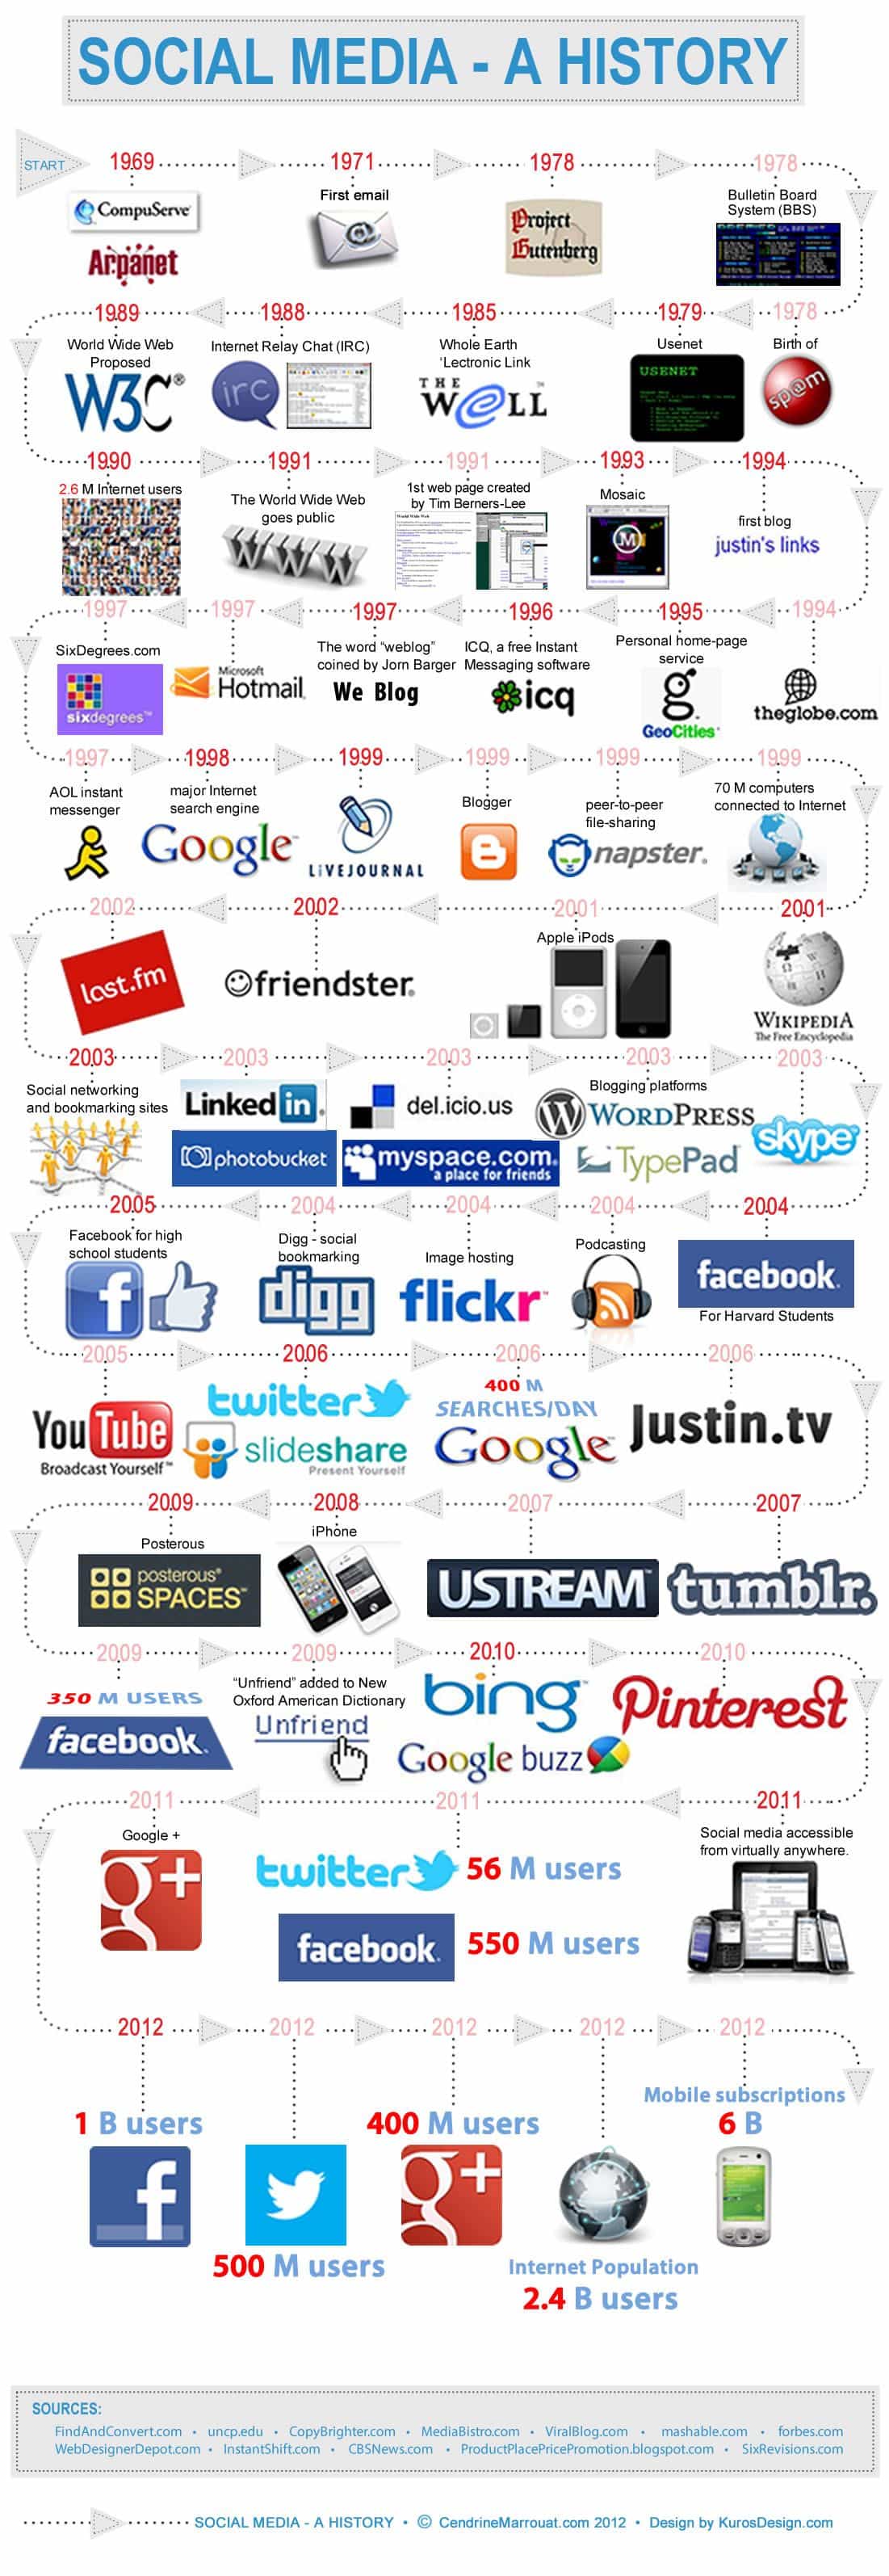 Historia del social media en una infografía